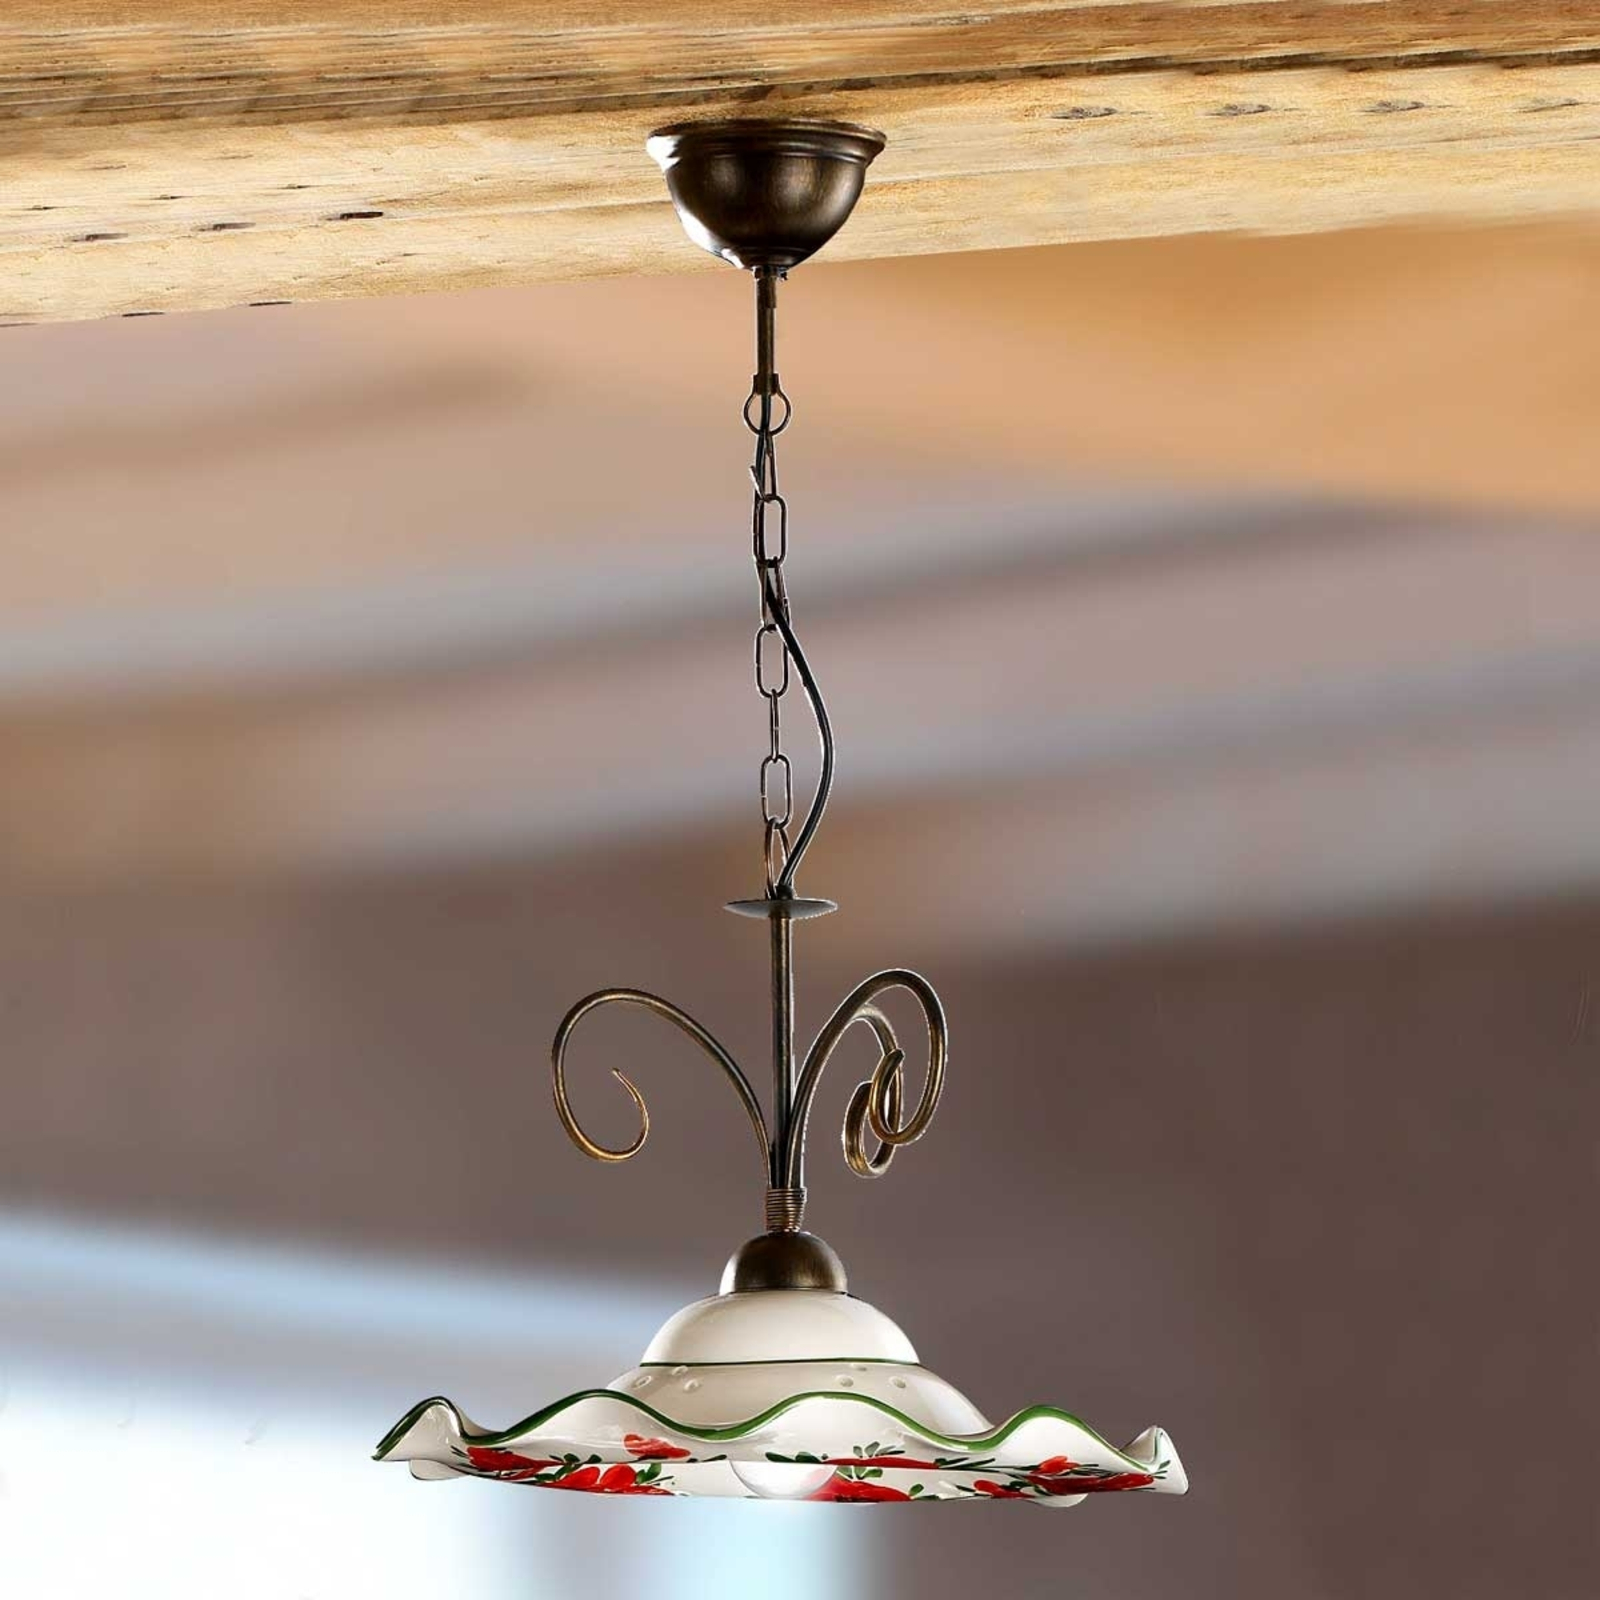 Prachtige hanglamp ROSOLACCI met keramieken kap.